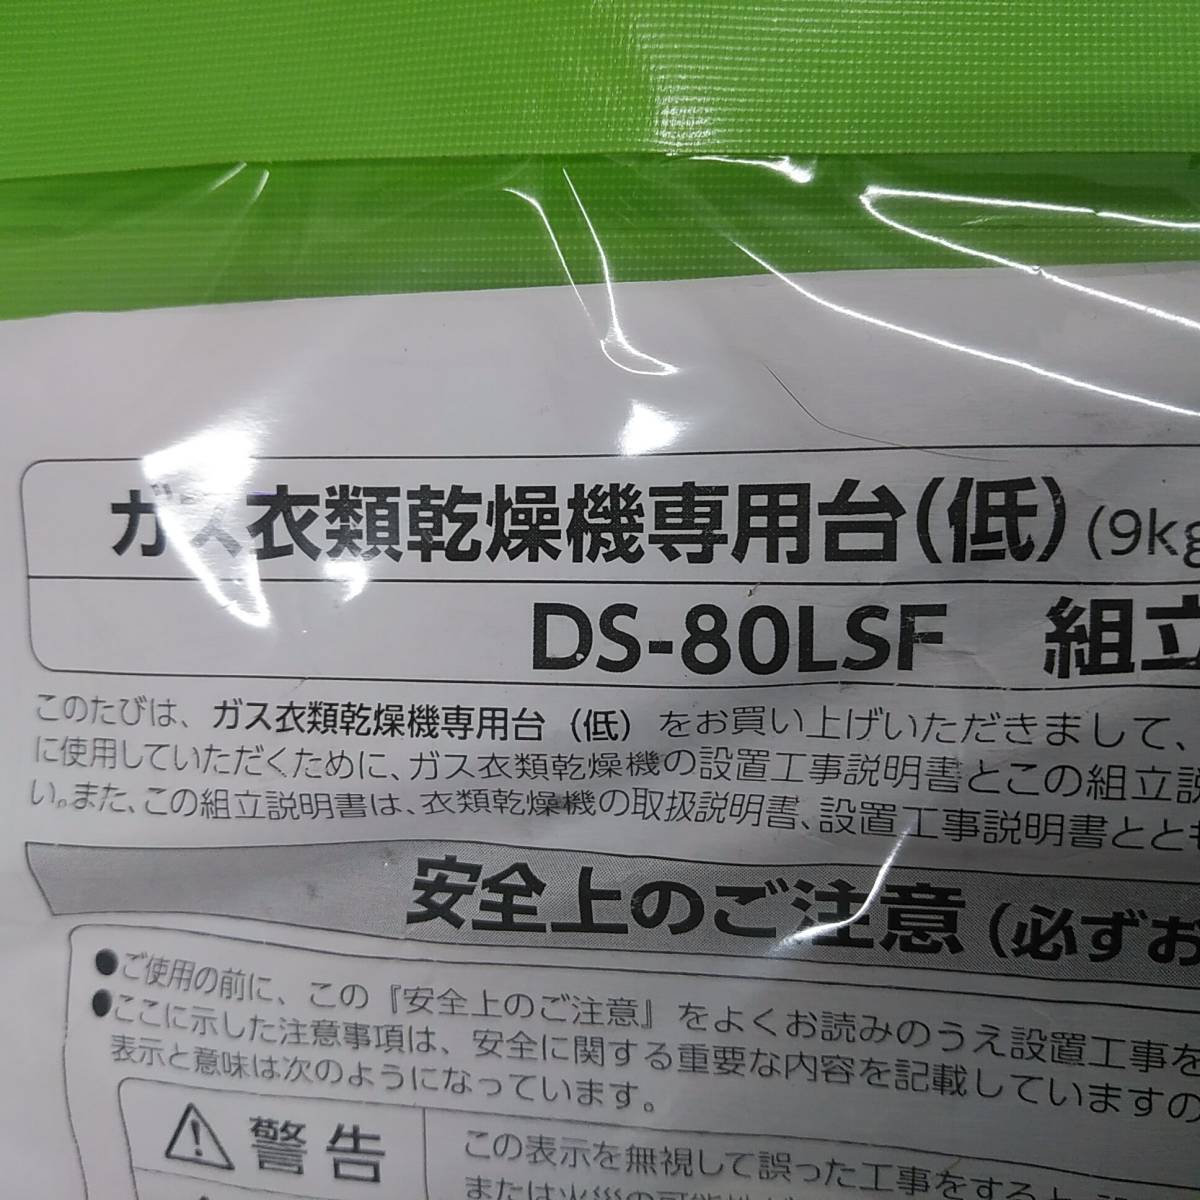 即決/ 未使用品/ リンナイ Rinnai ガス衣類乾燥機 乾太くん用 専用台(低) DS-80LSF_画像4